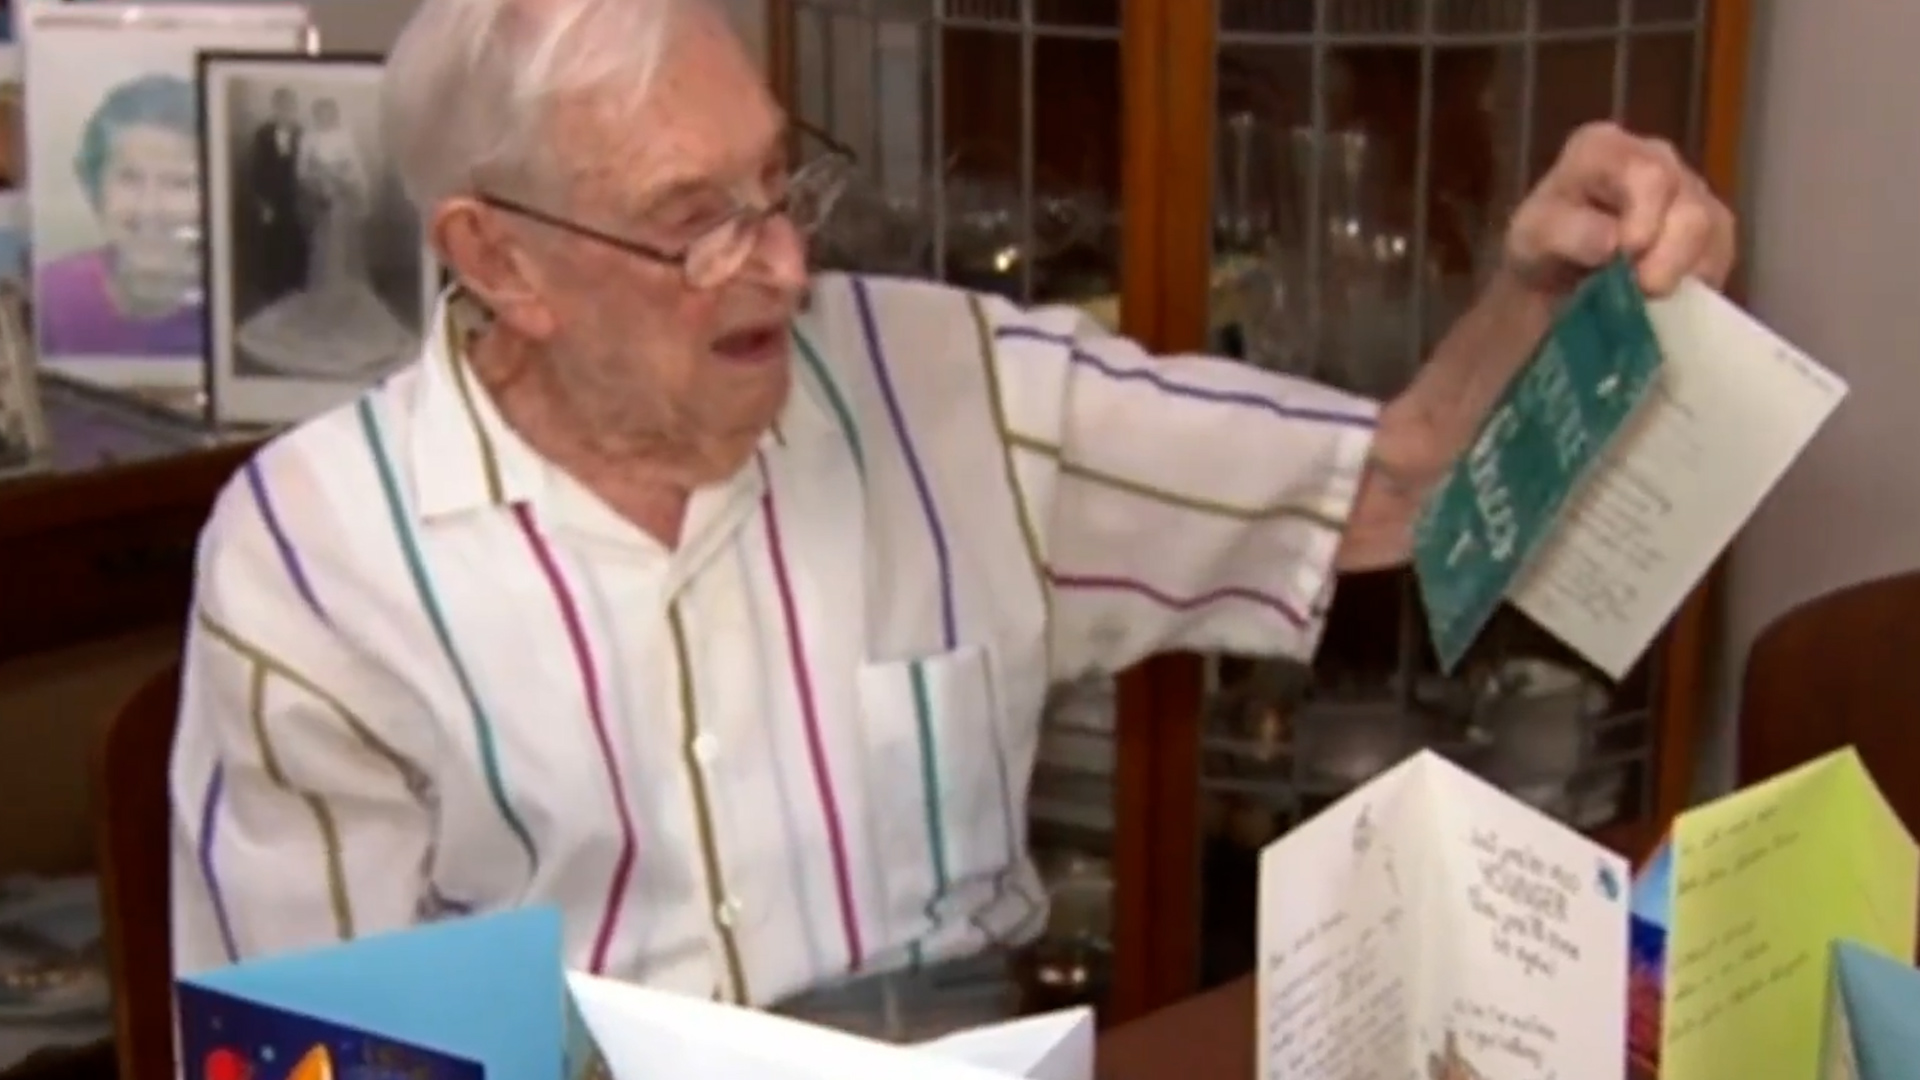 Gordon recibió de su familia regalos y felicitaciones por su cumpleaños 106